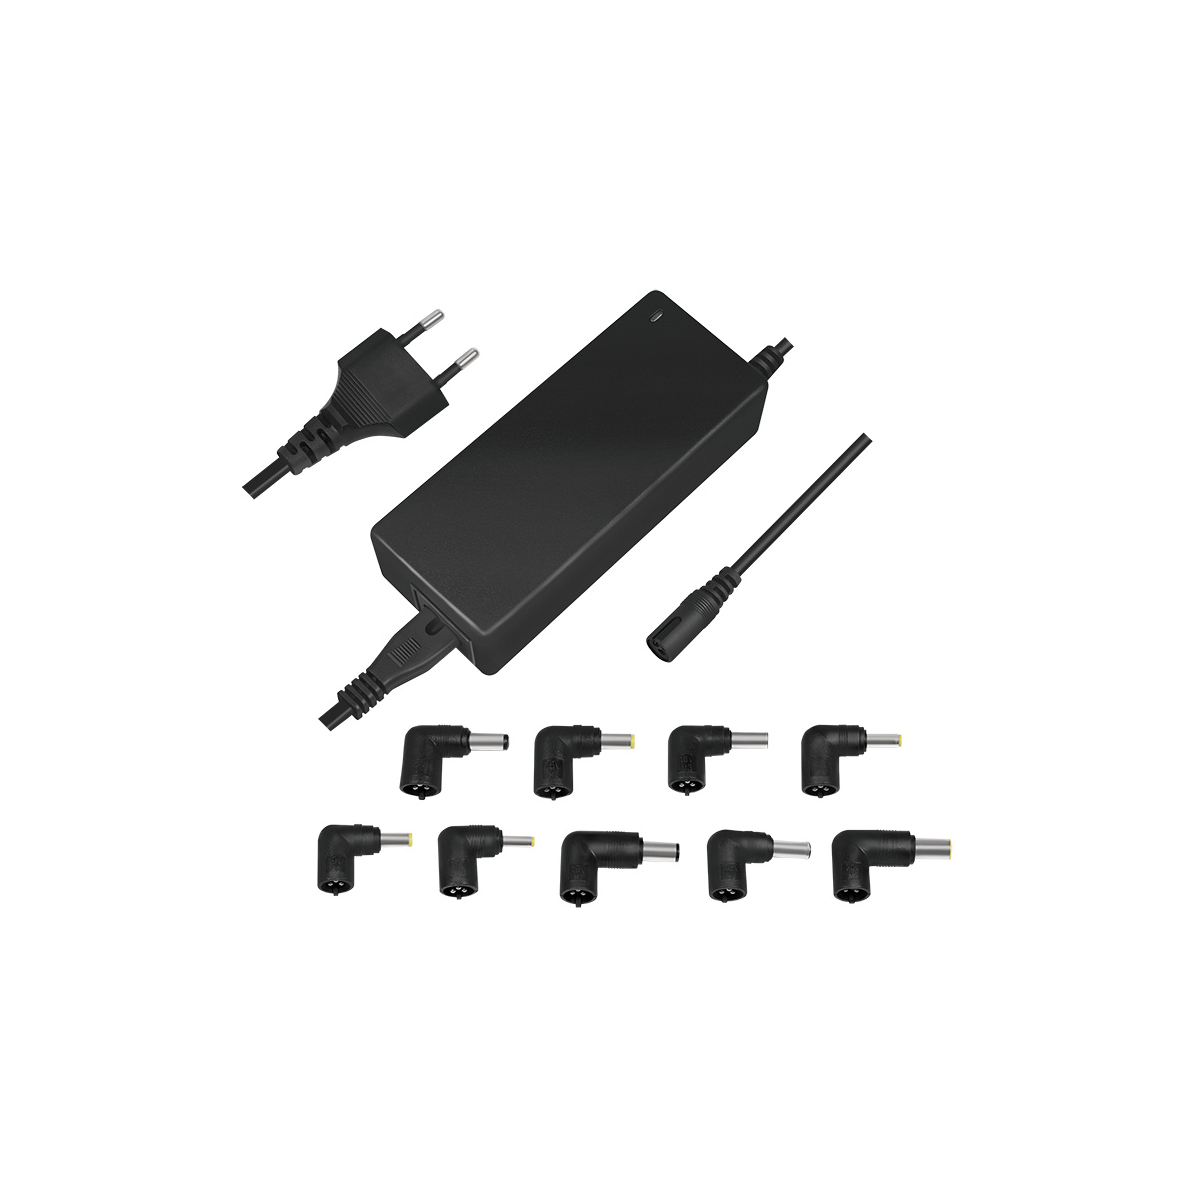 LOGILINK PROFESSIONAL Stecker-Netzteile, Universal Watt, Netzteil 90 schwarz schwarz Notebooks für Universal, Notebook